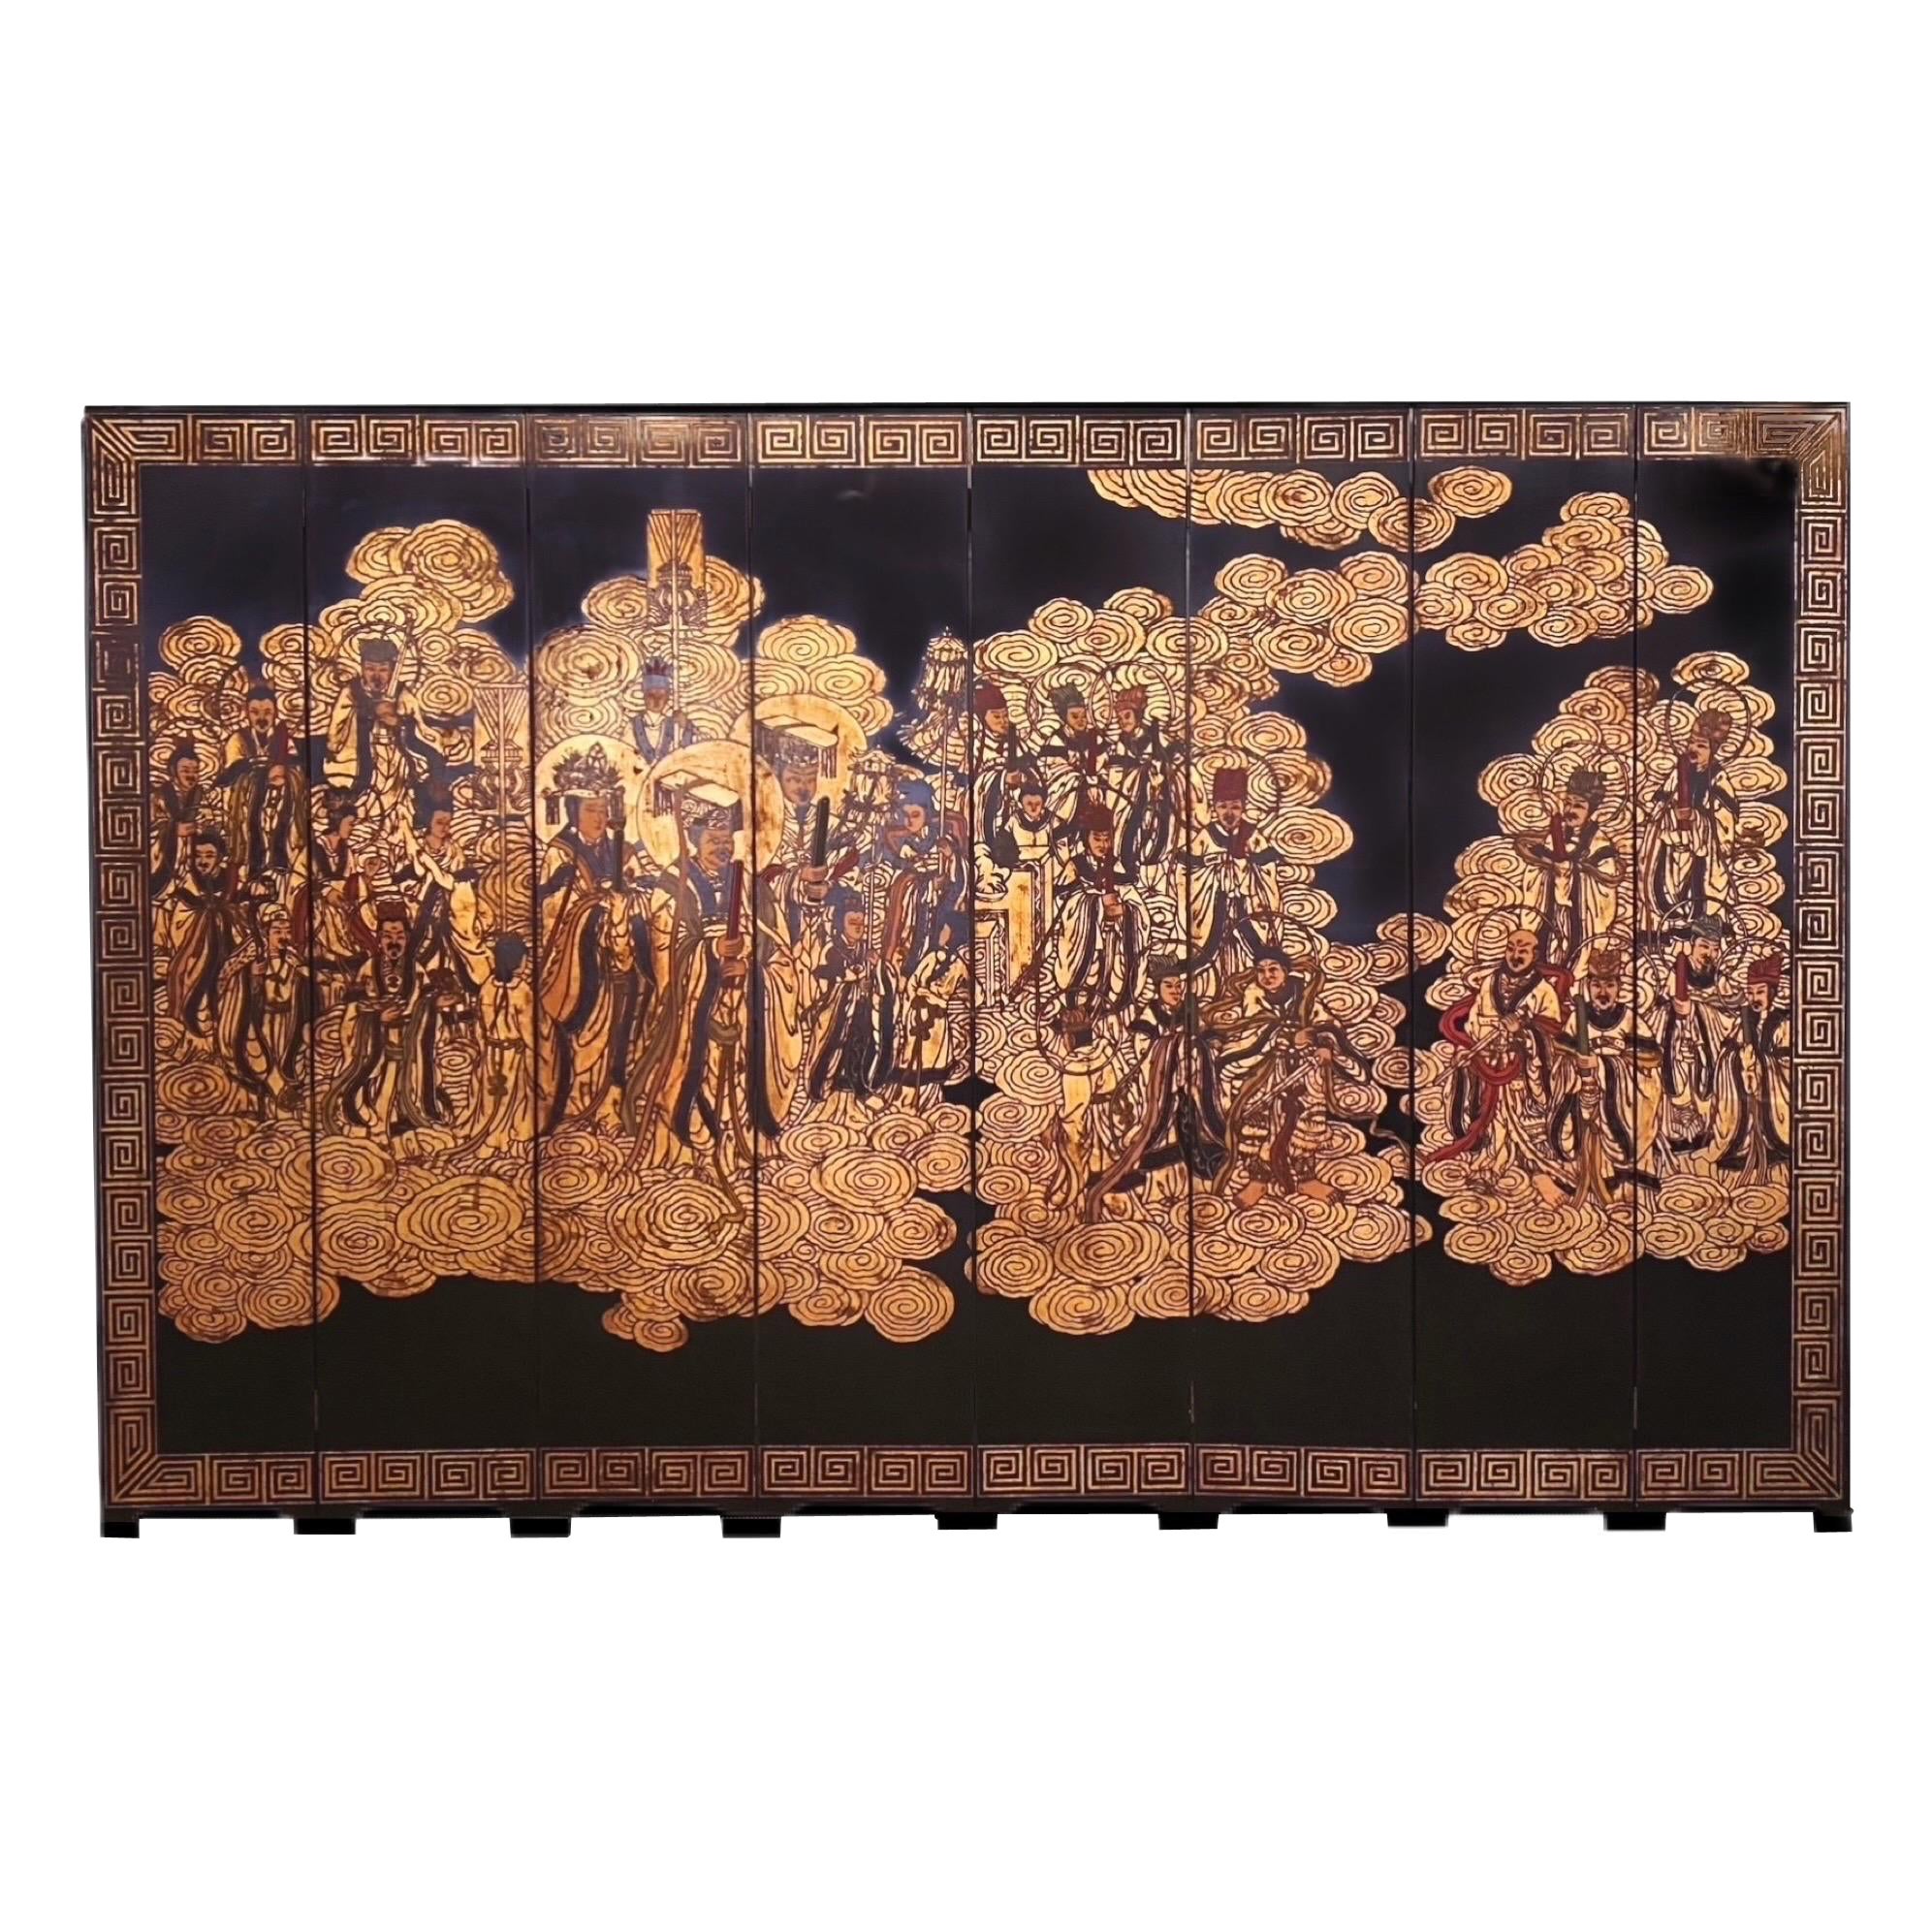 Chinesischer Coromandel-Raumteiler des 20. Jahrhunderts, schwarz vergoldet, achtteilig, unsterbliche Himmelsgöttinnen